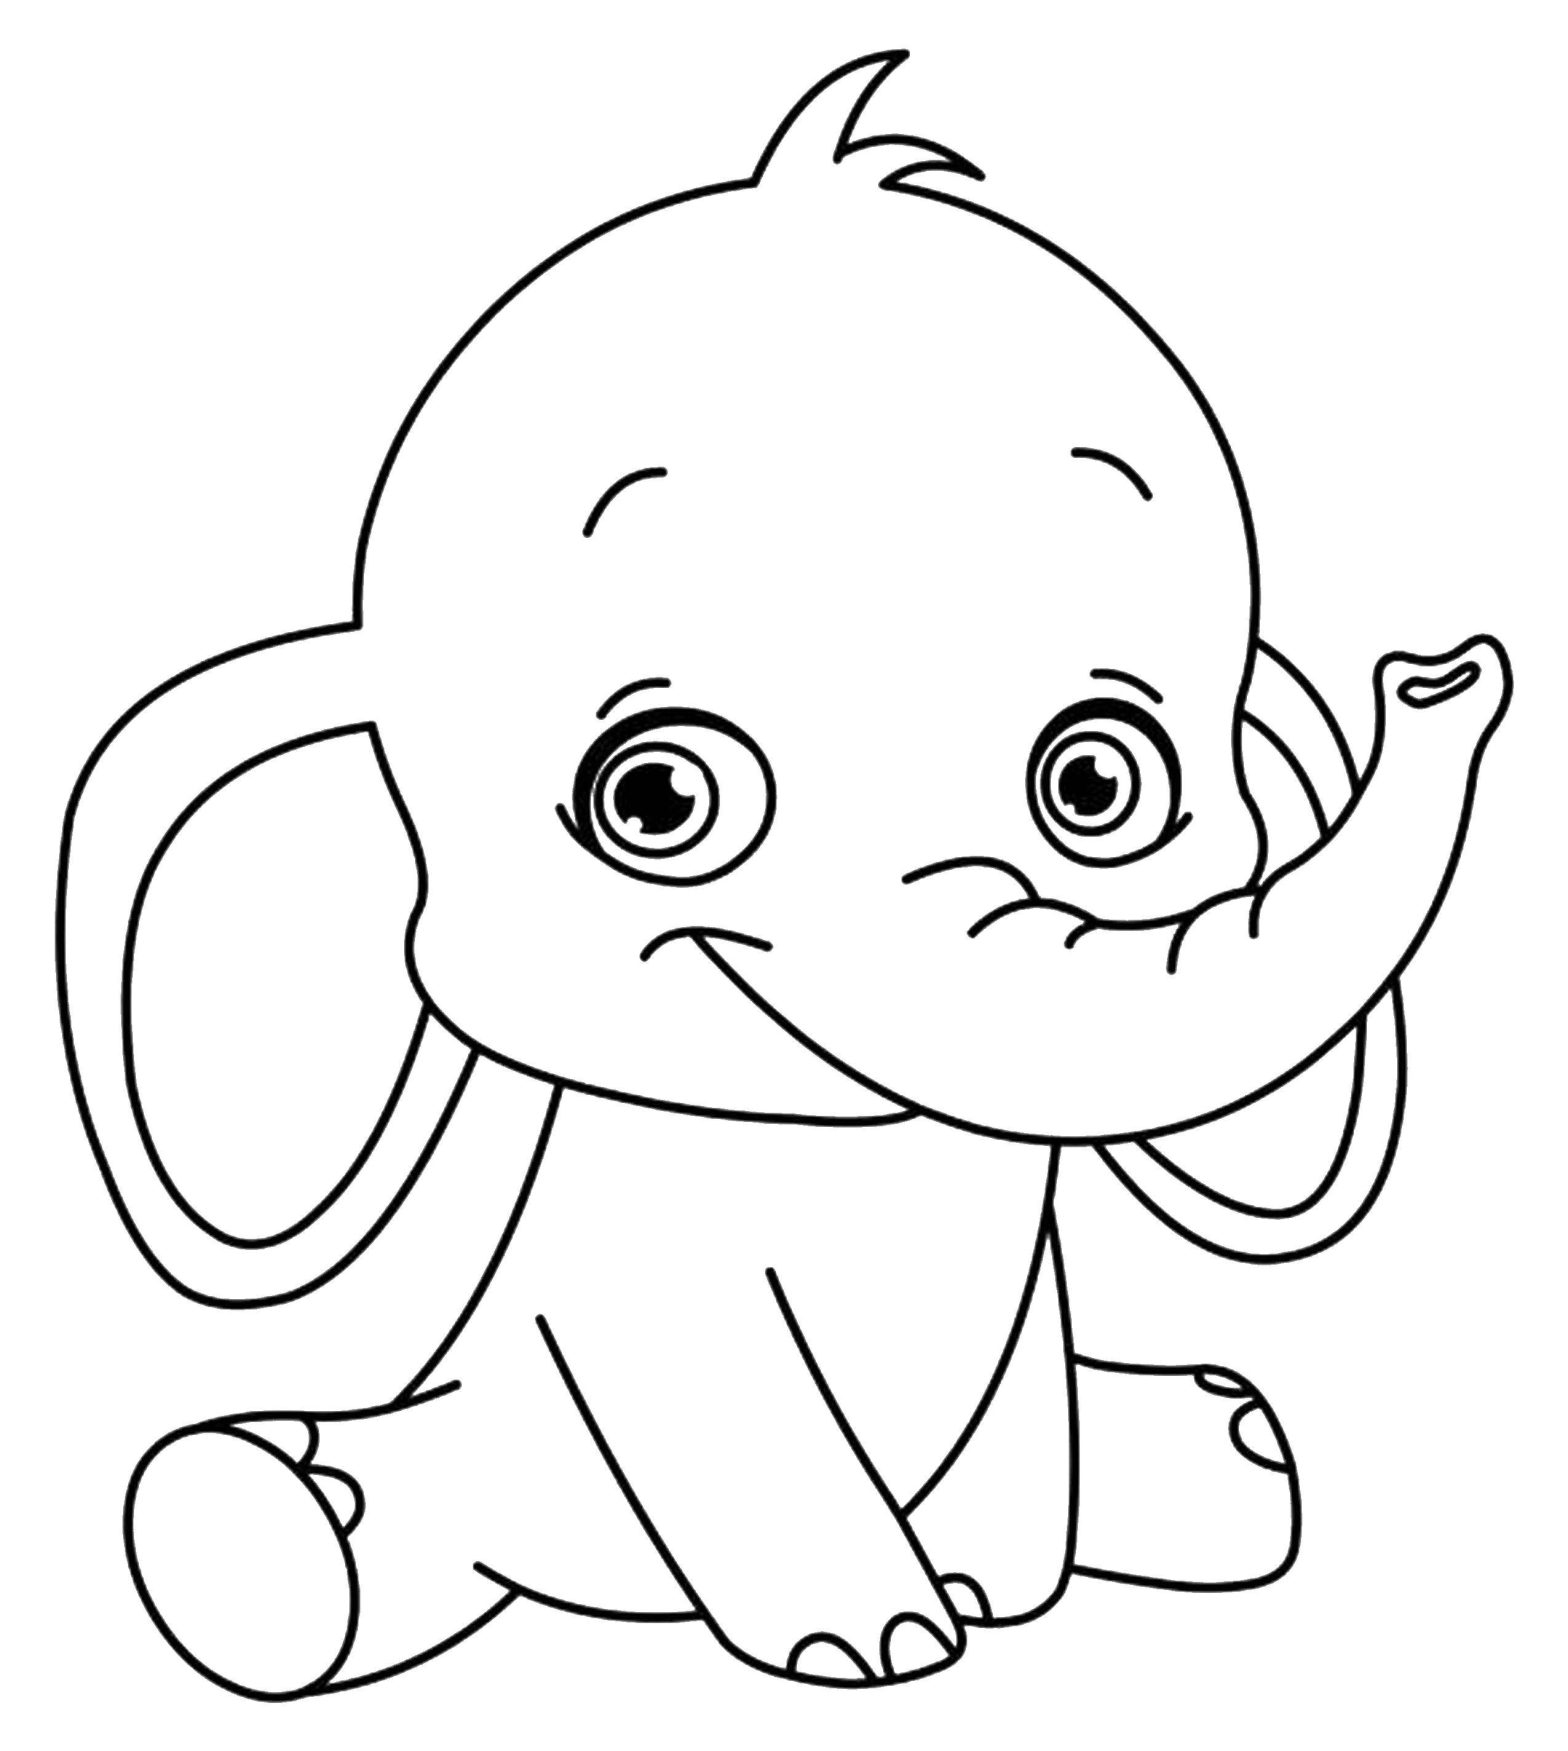 Раскраска слонята - бесплатный принт для детей (слонята)